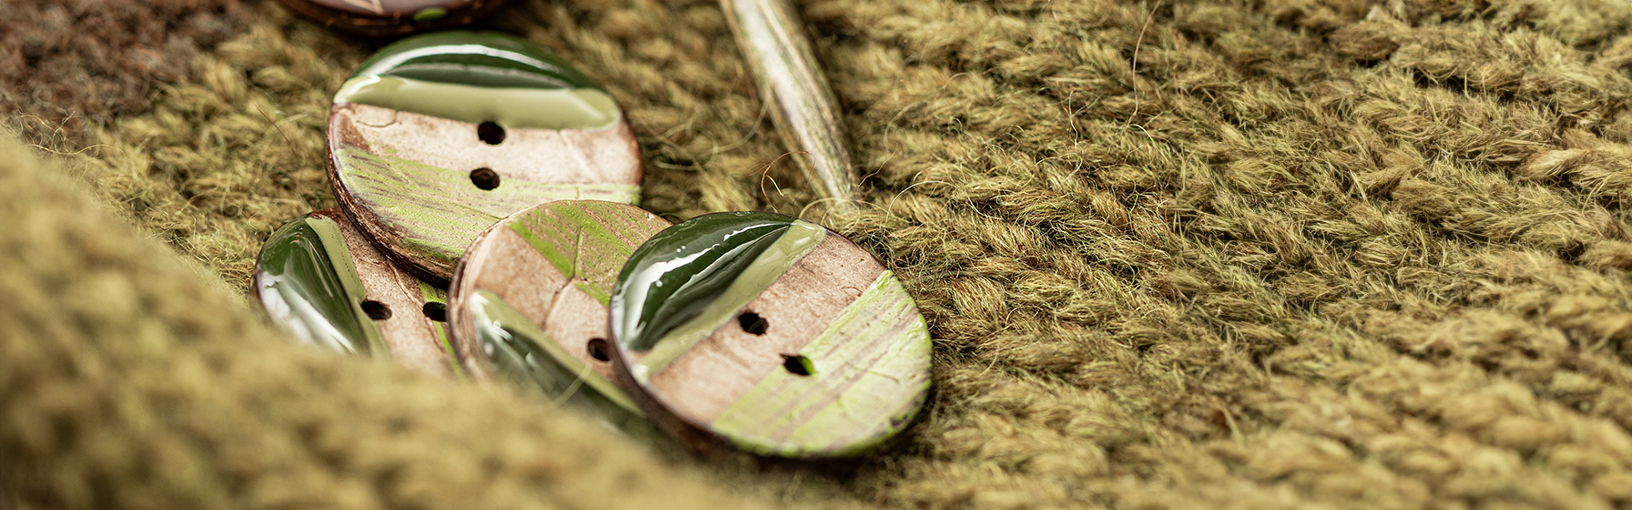 Visokokvalitetne pređe za pletenje, kukičanje i filc Lana Grossa Vune | Big & Easy